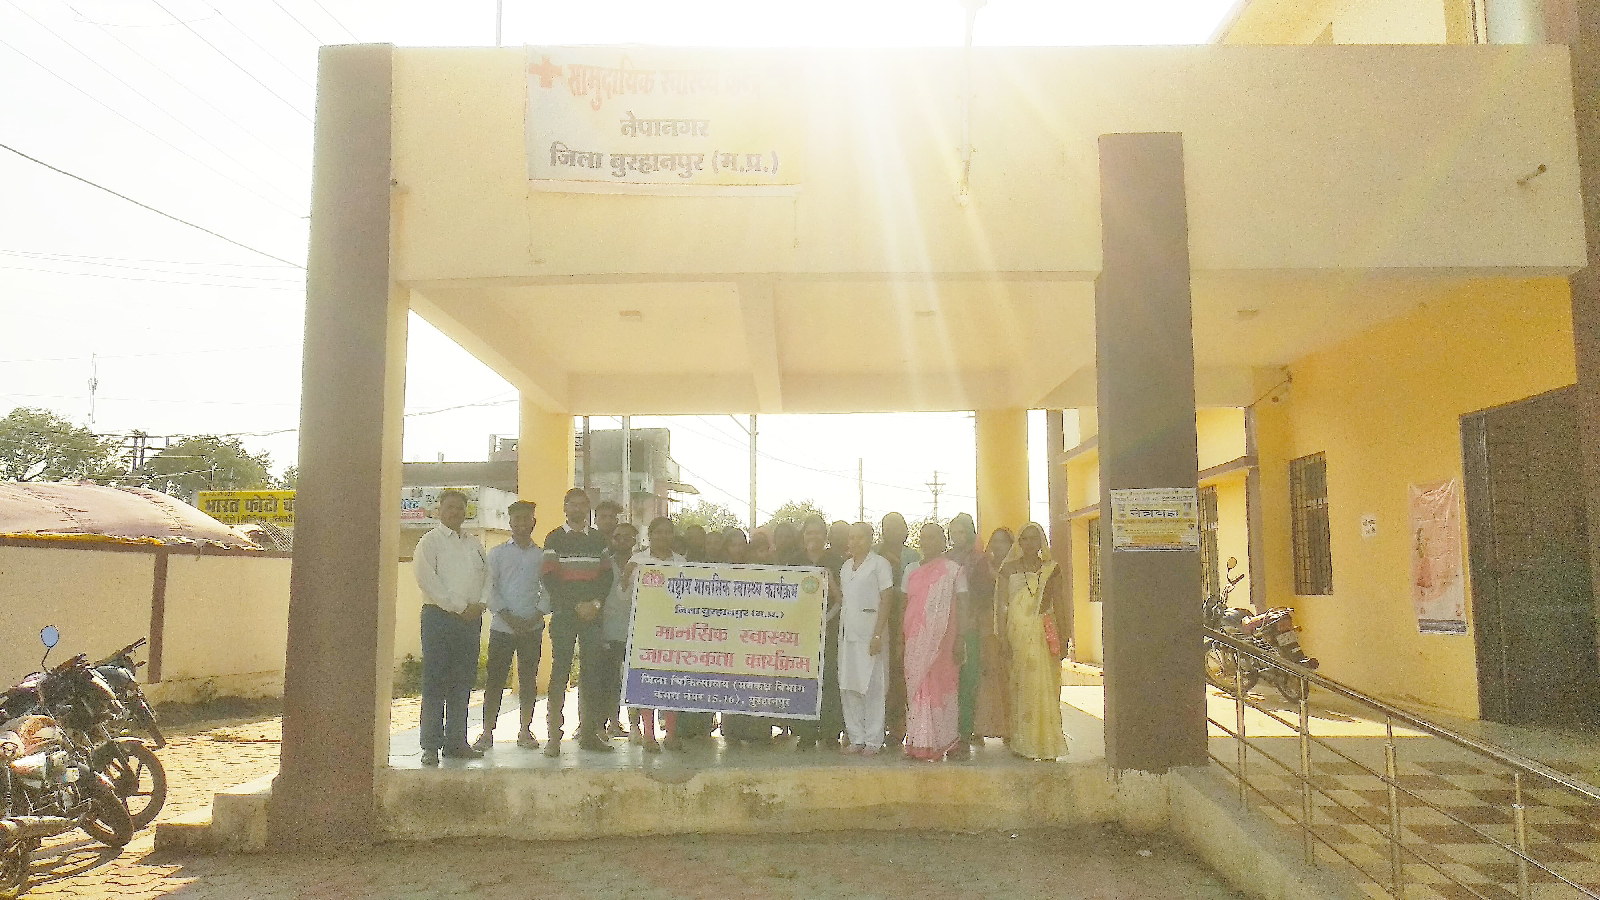 सामुदायिक स्वास्थ्य केंद्र नेपानगर और आयुष्मान आरोग्य मंदिर उप स्वास्थ्य केंद्र चांदनी में मानसिक स्वास्थ्य जागरूकता कार्यक्रम का आयोजन किया गया